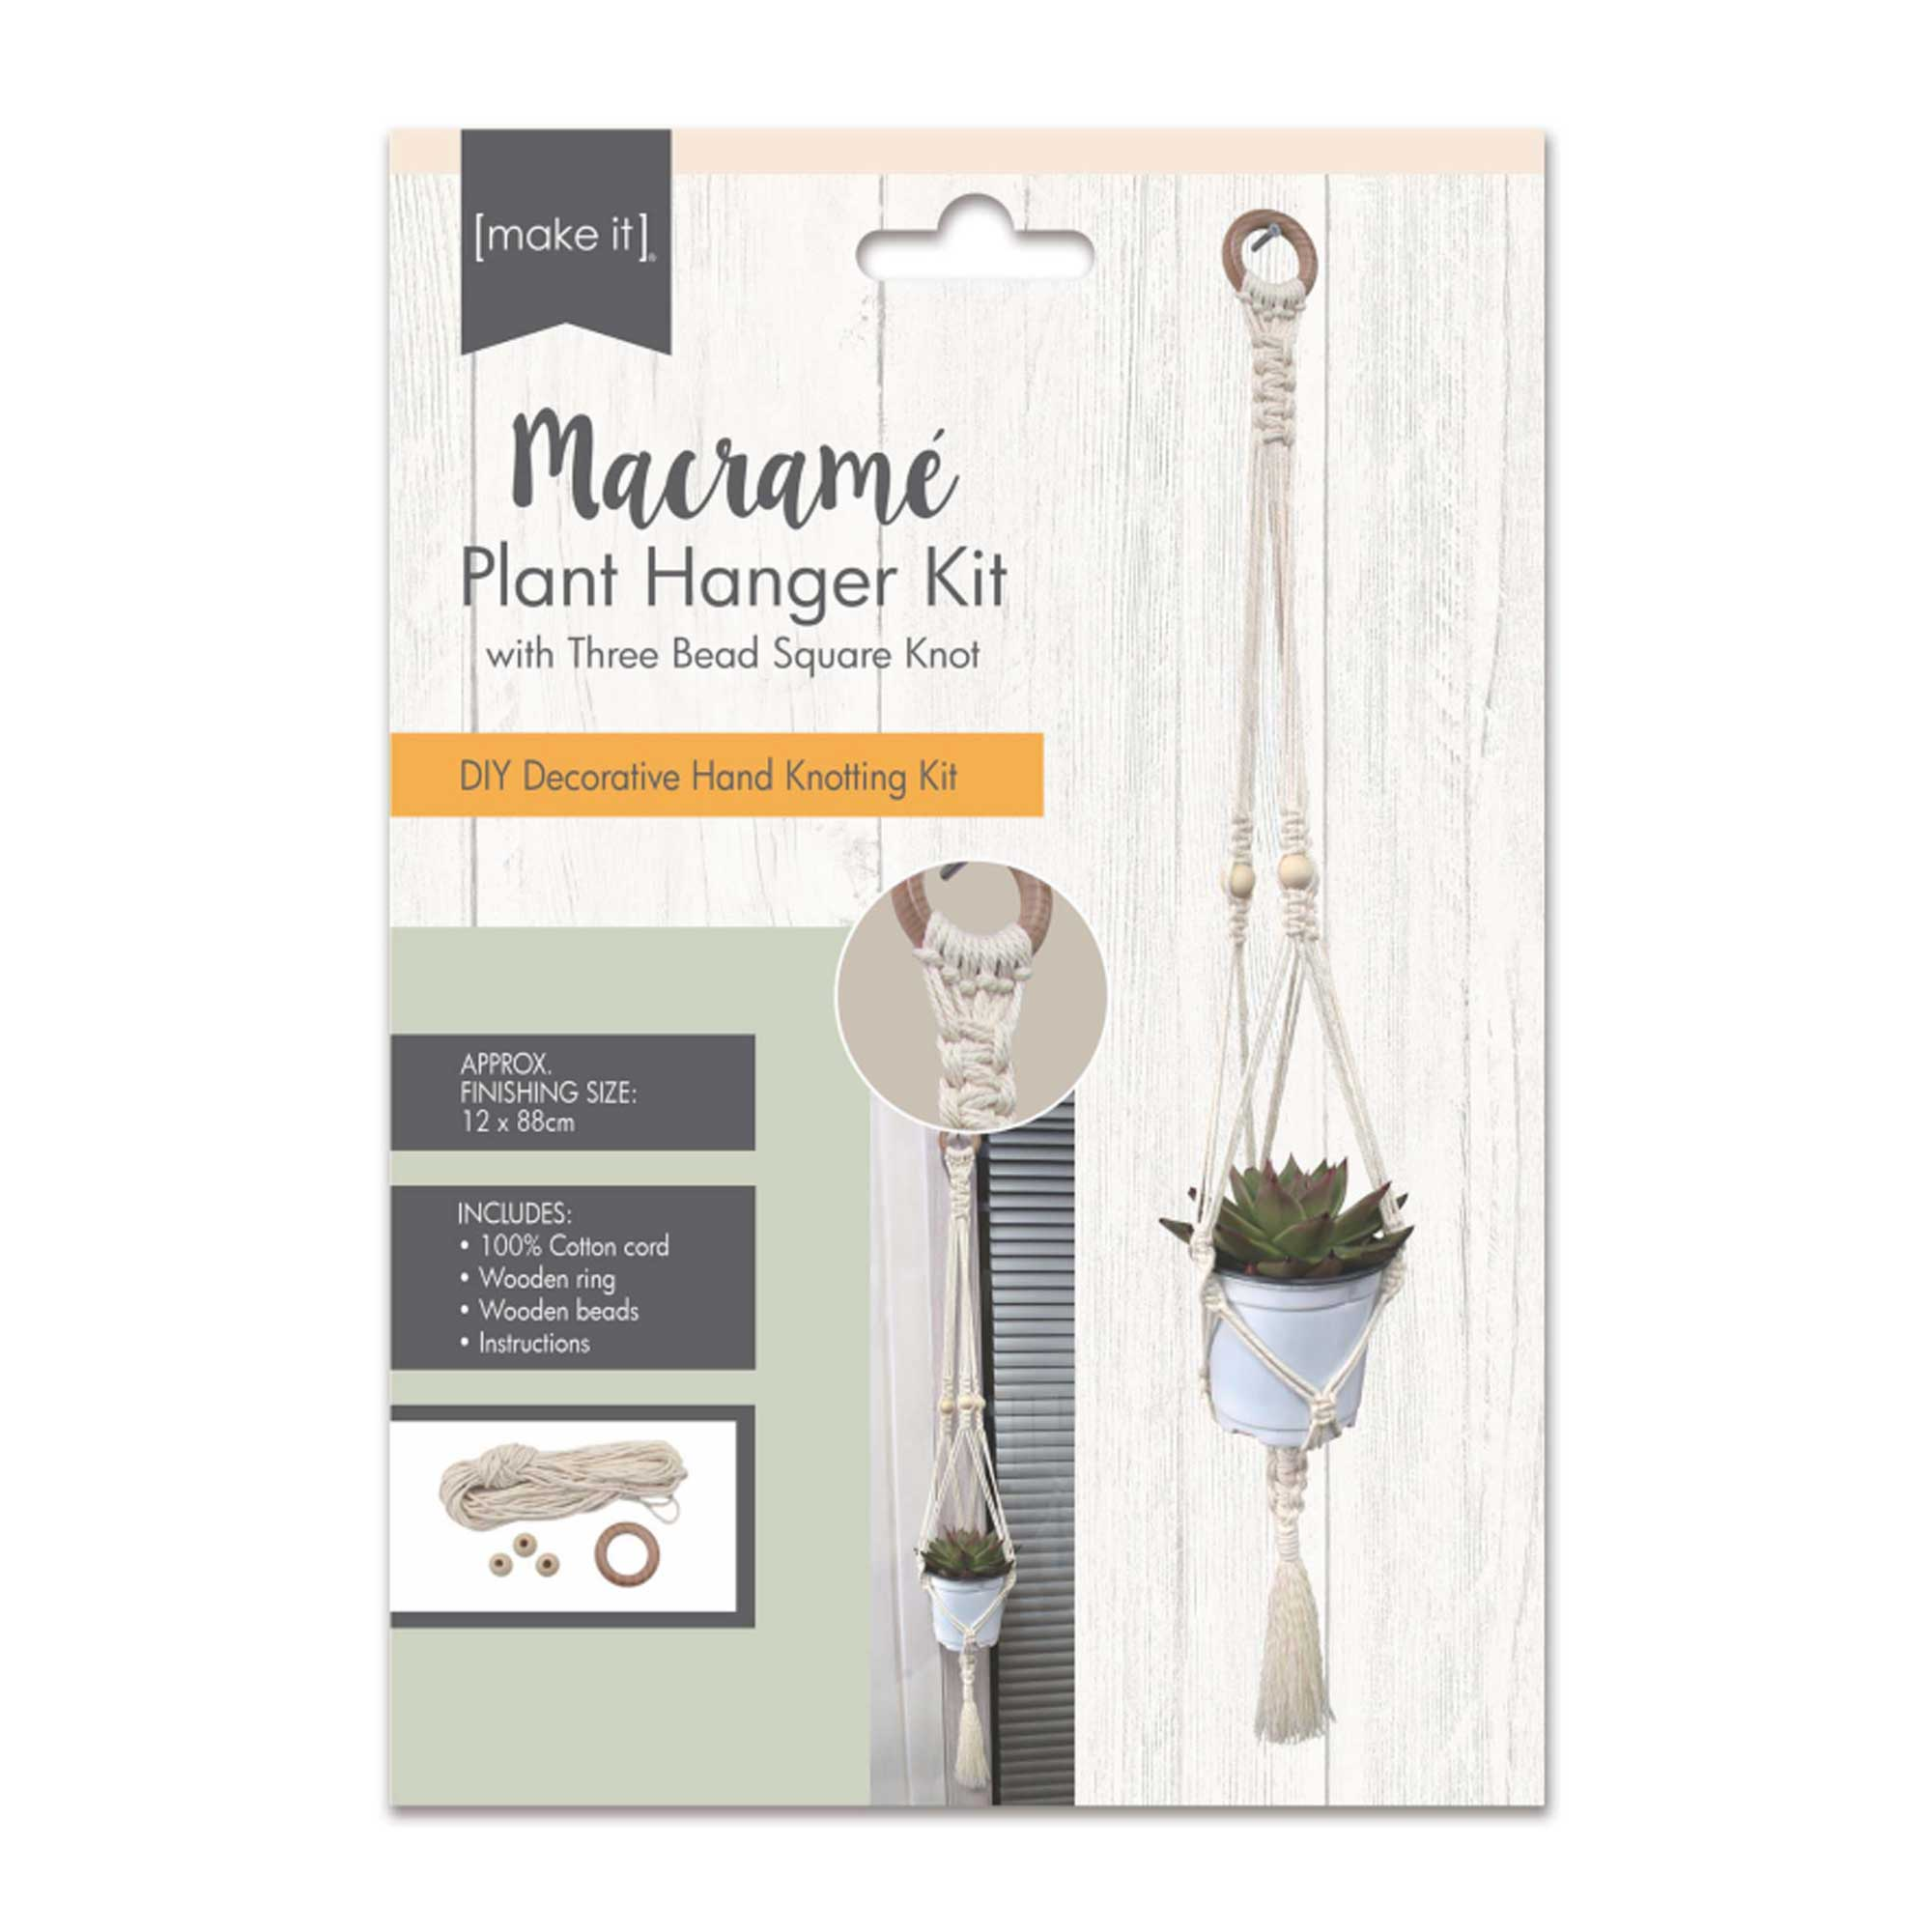 Macrame Plant Hanger Kit - 3 Bead Square Knot